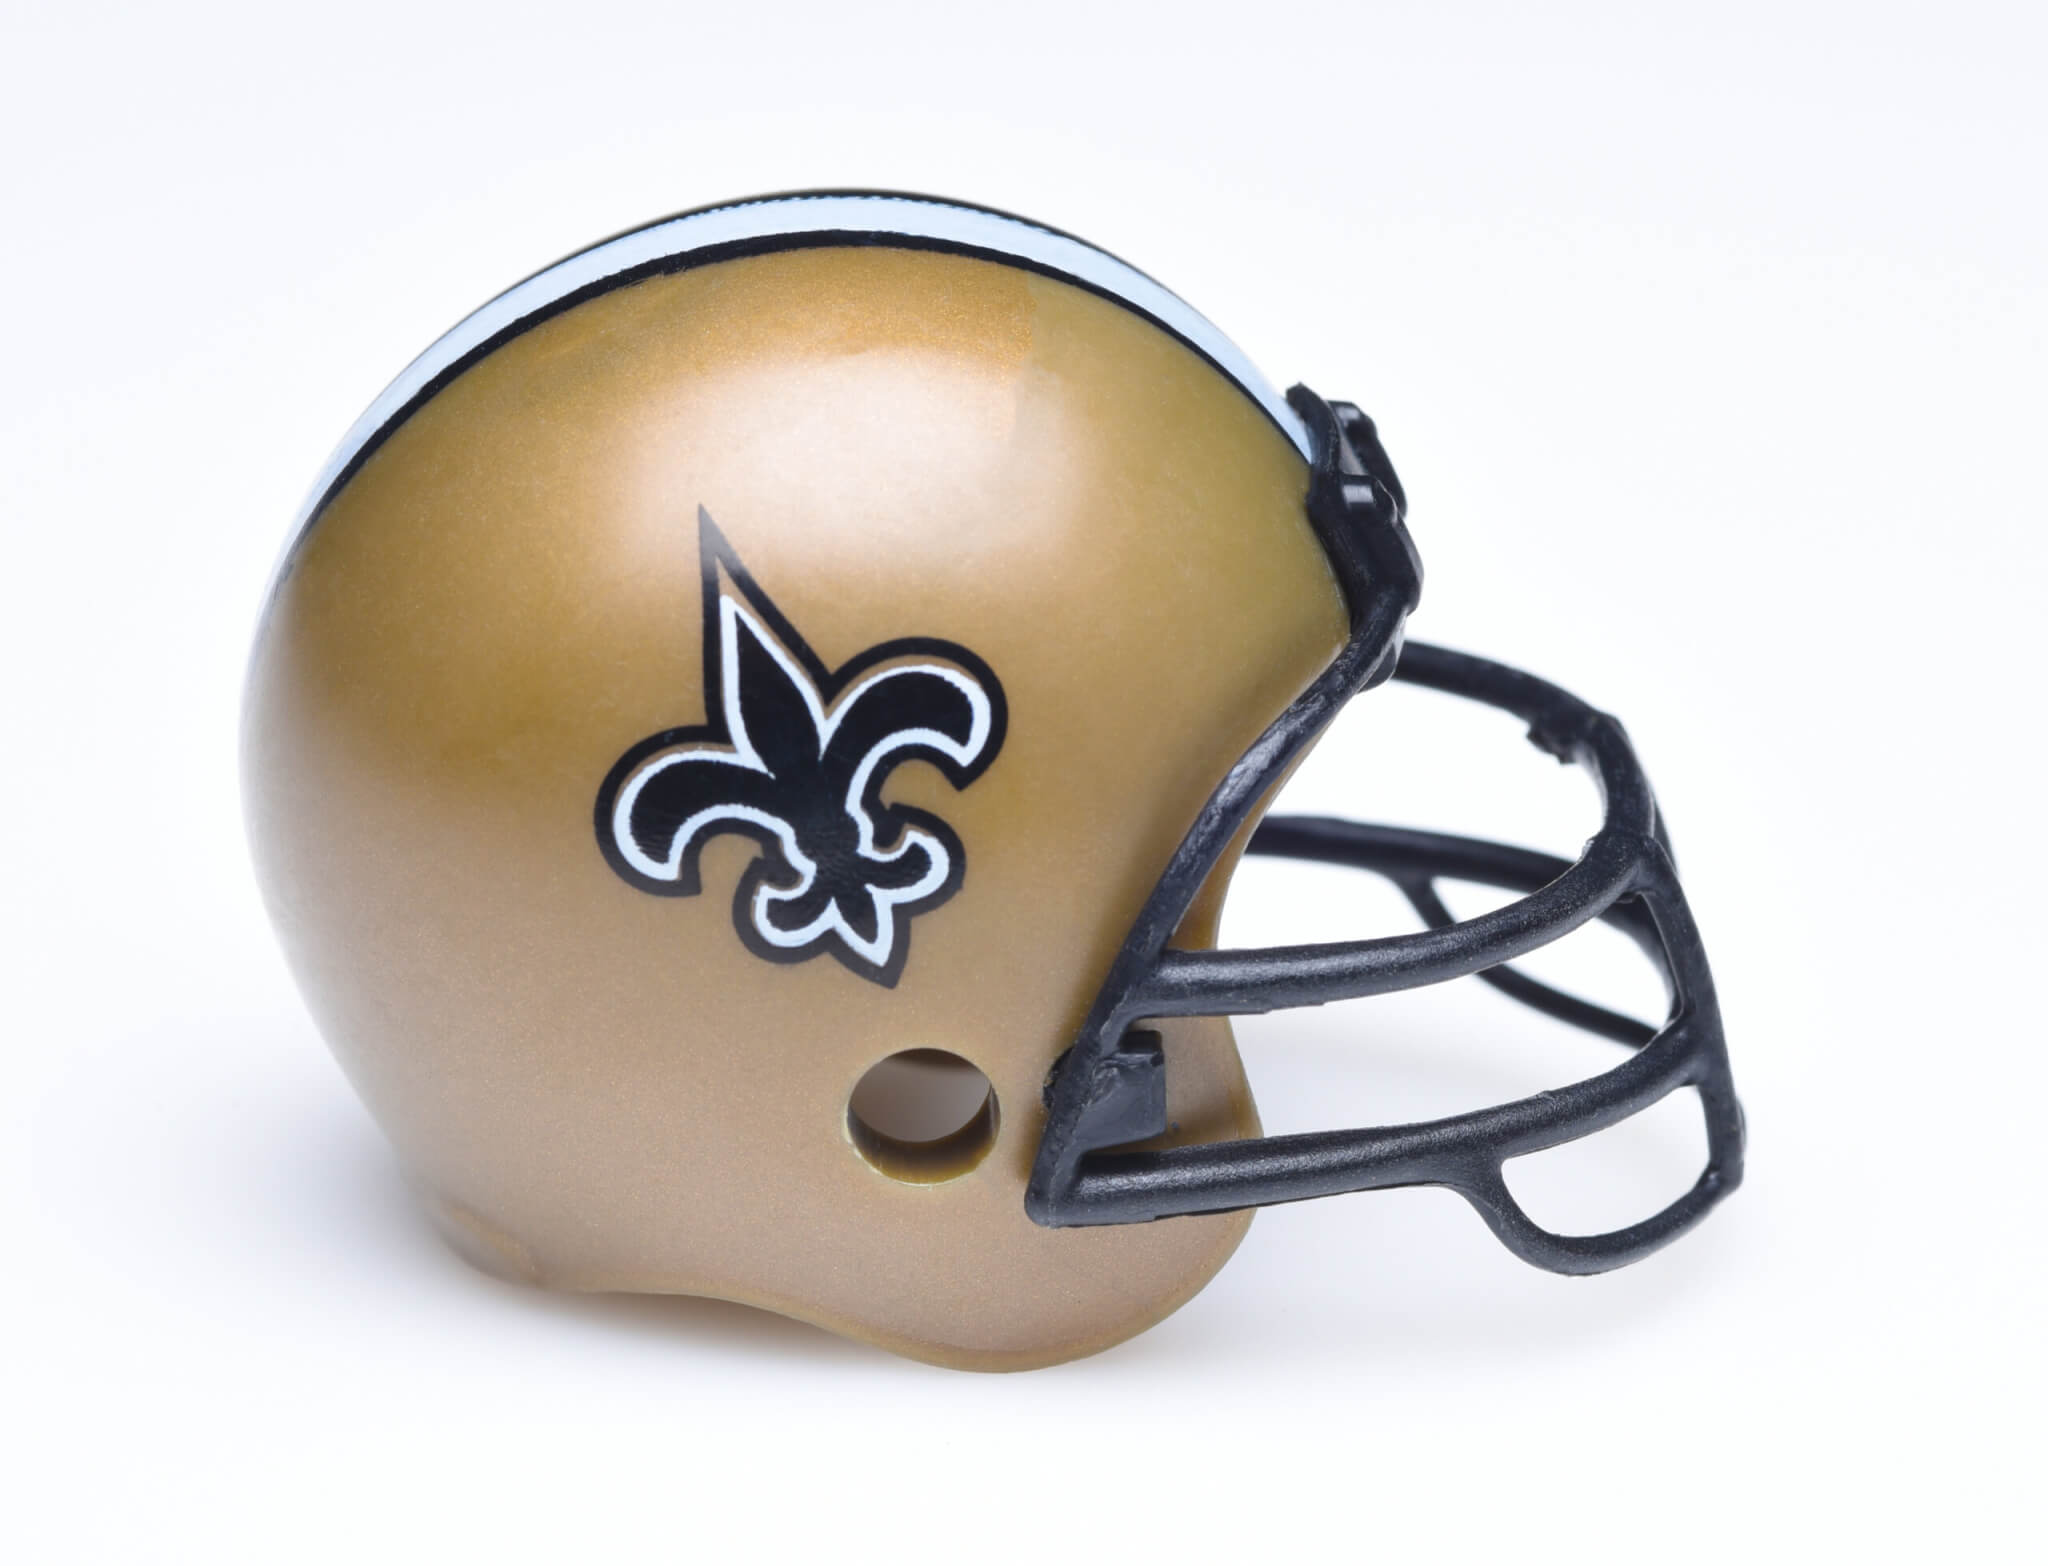 New Orleans Saints football helmet